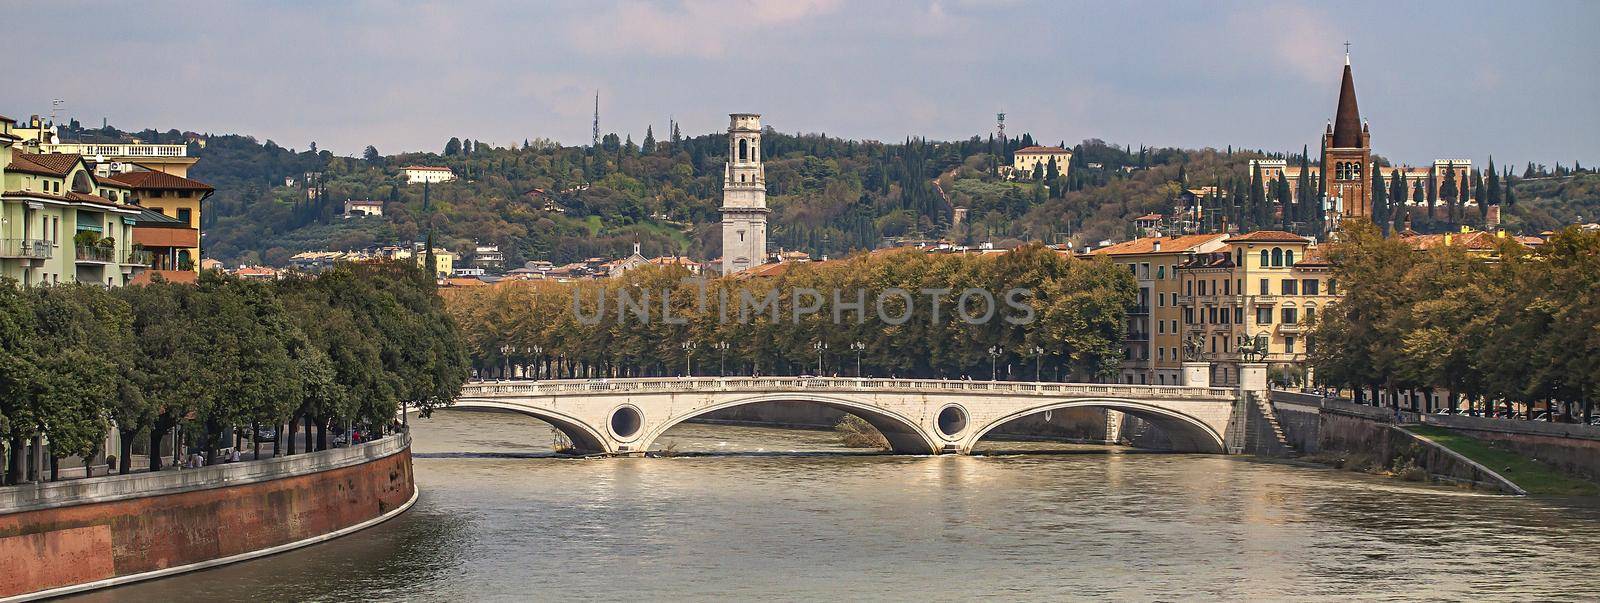 Verona river bridge, banner image with copy space